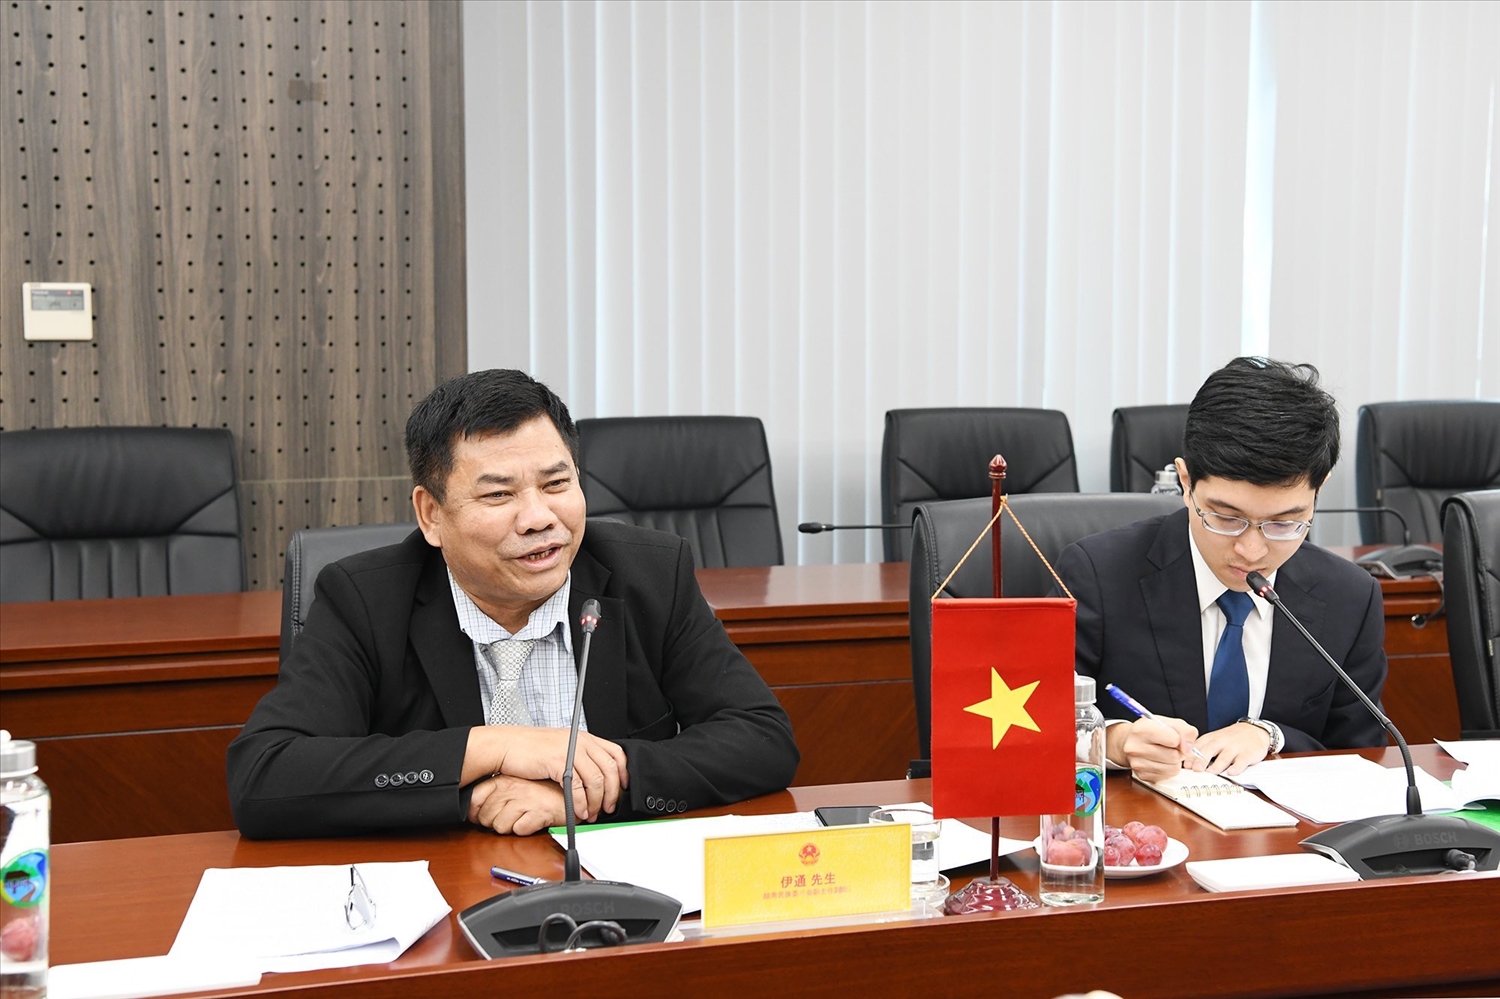 Thứ trưởng, Phó Chủ nhiệm UBDT Việt Nam Y Thông bày tỏ tình cảm thân thiết, sự vui mừng được đón Đoàn tại UBDT Việt Nam